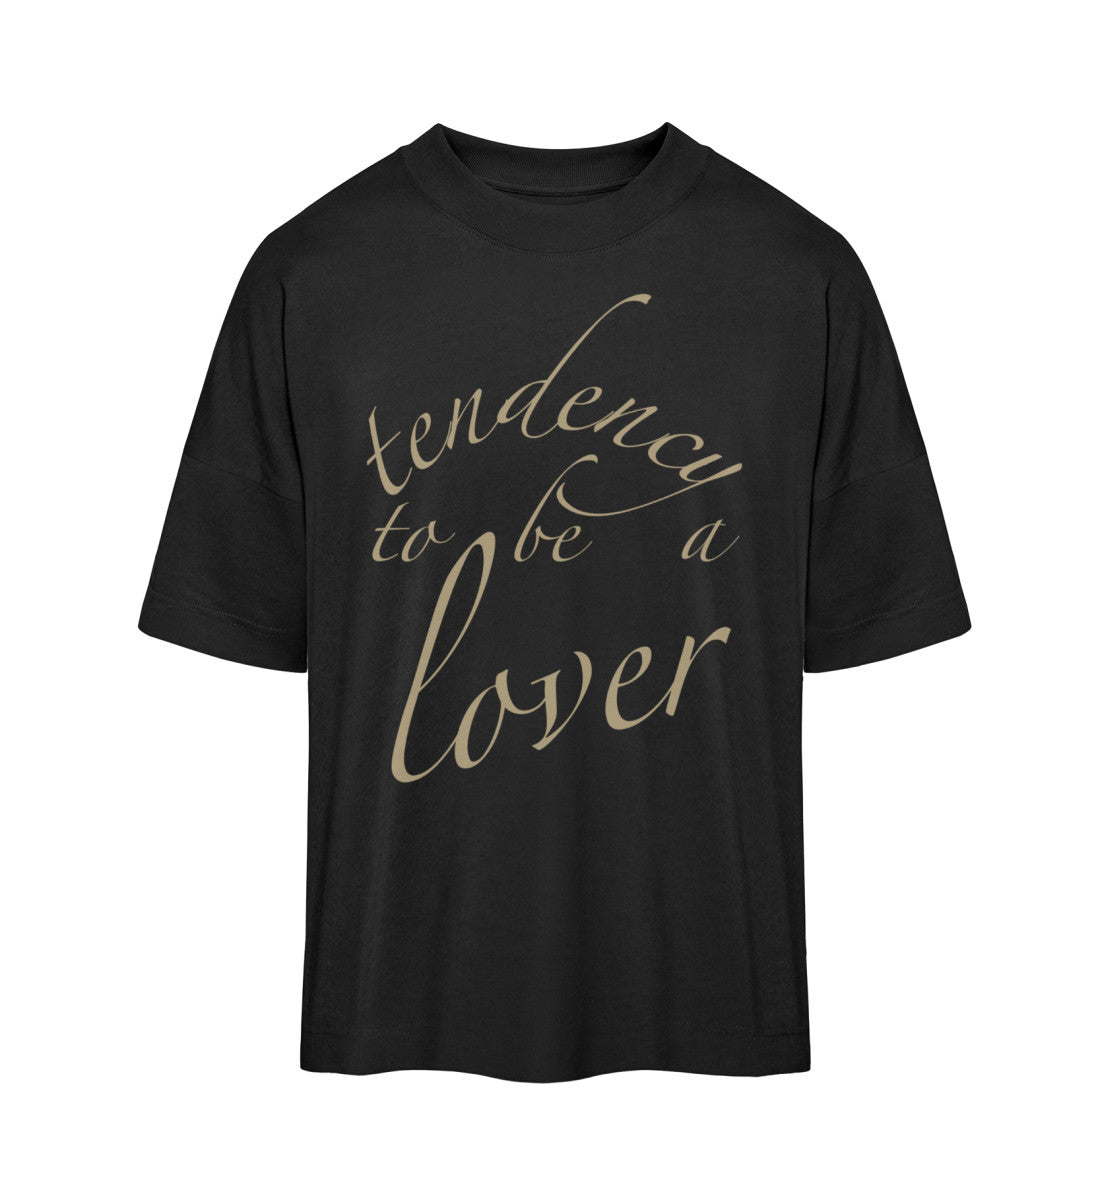 Schwarzes T-Shirt im Unisex Oversize Fit für Frauen und Männer bedruckt mit dem Design der Roger Rockawoo Kollektion Tendency to be a Lover